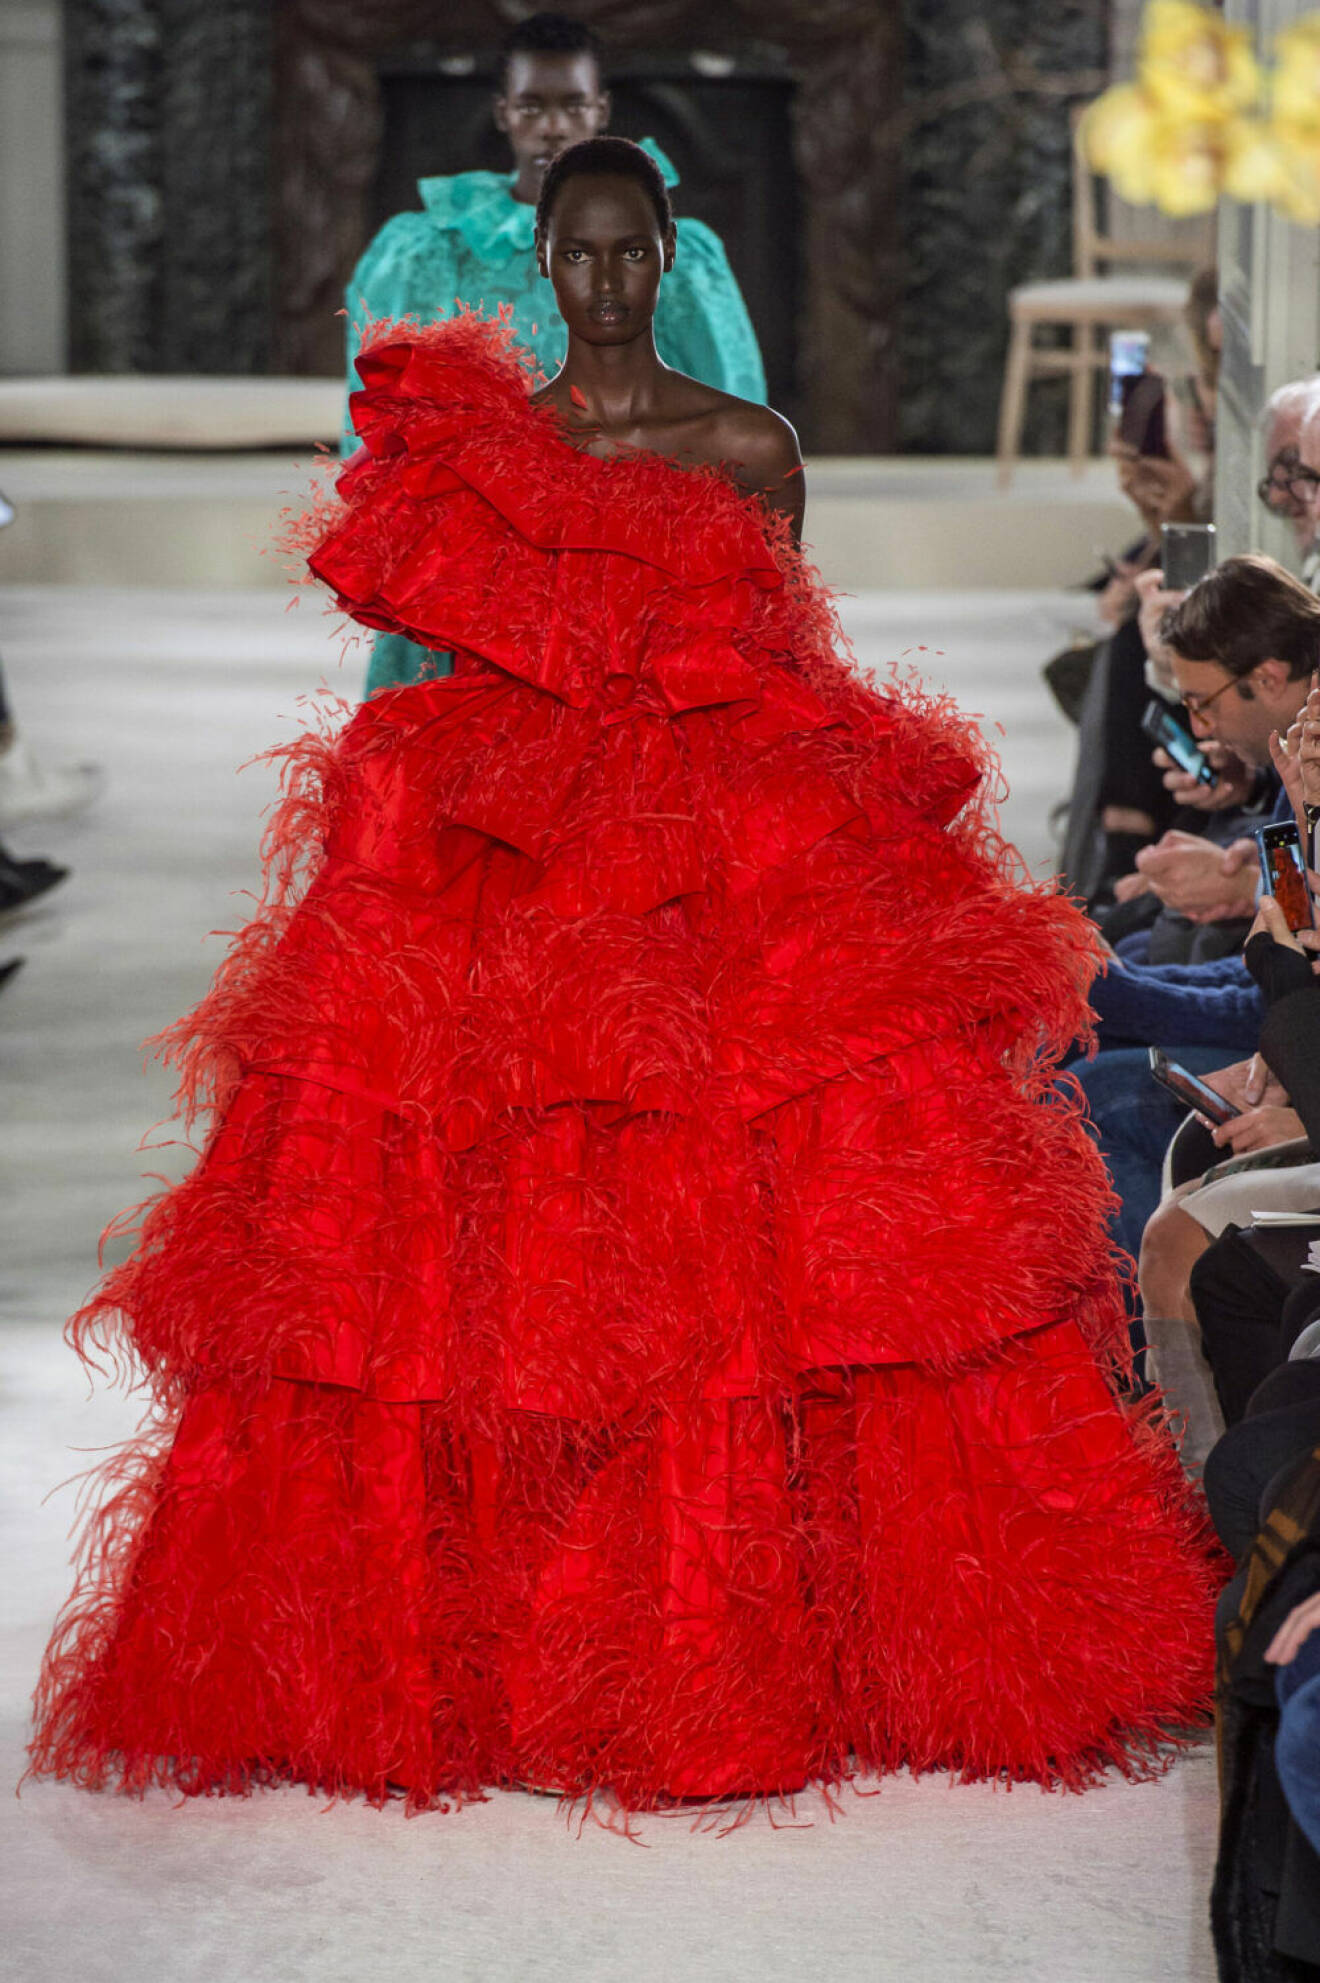 Valentino Haute Couture SS18, otrolig röd klänning med volanger och fransar